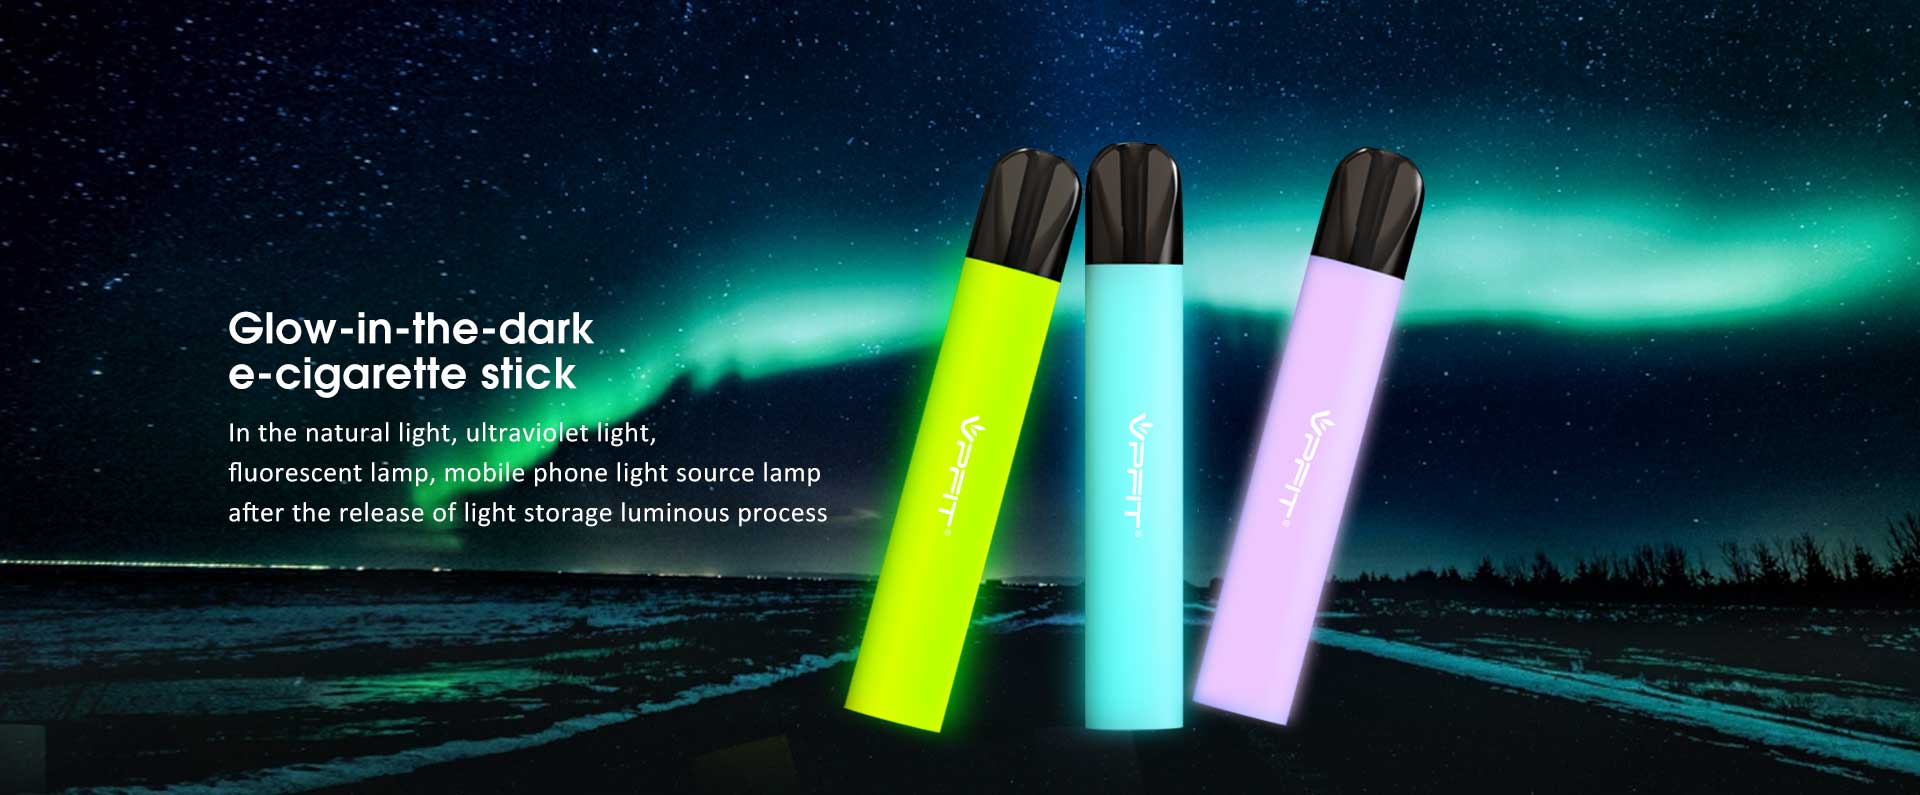 E-cigarette stick glows in the dark